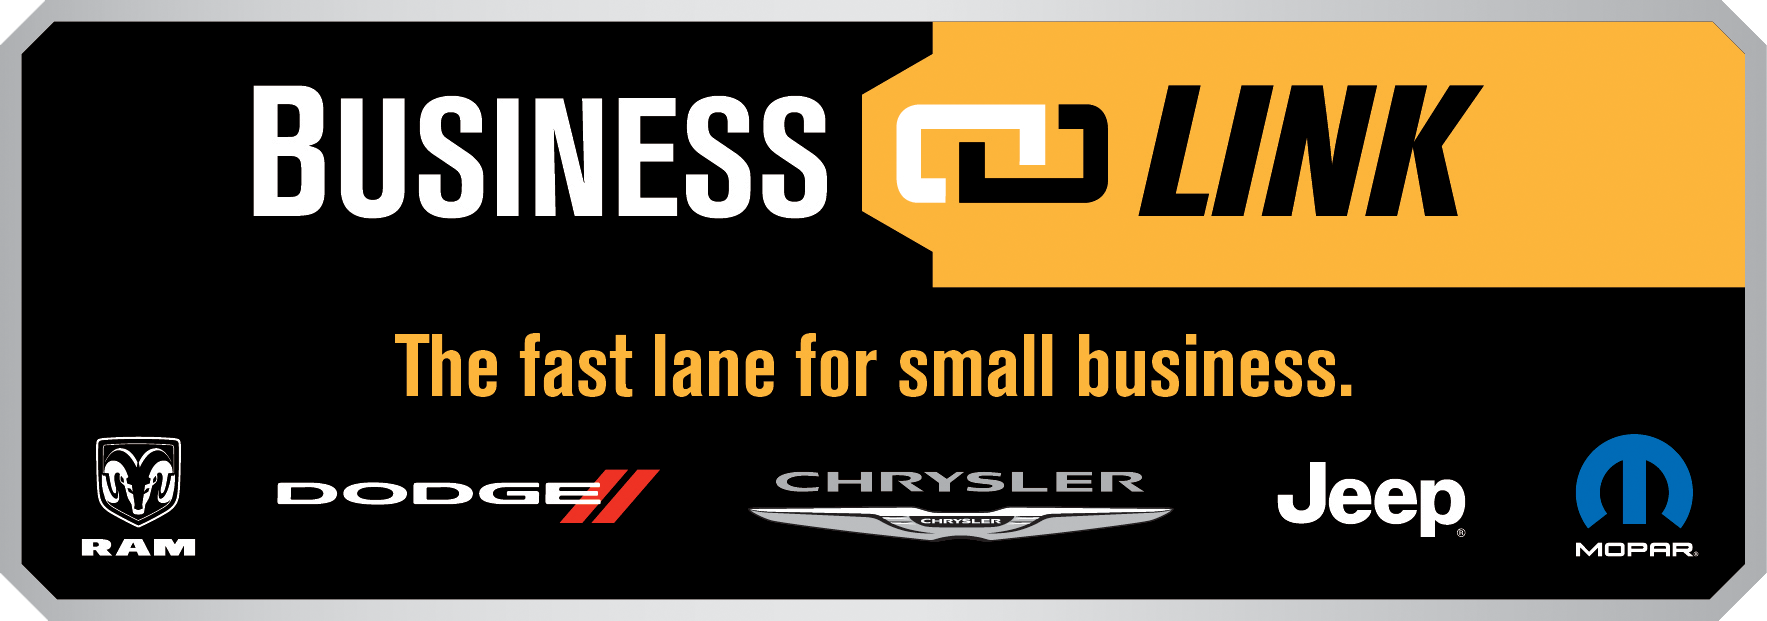 Chrysler business link benefits #2